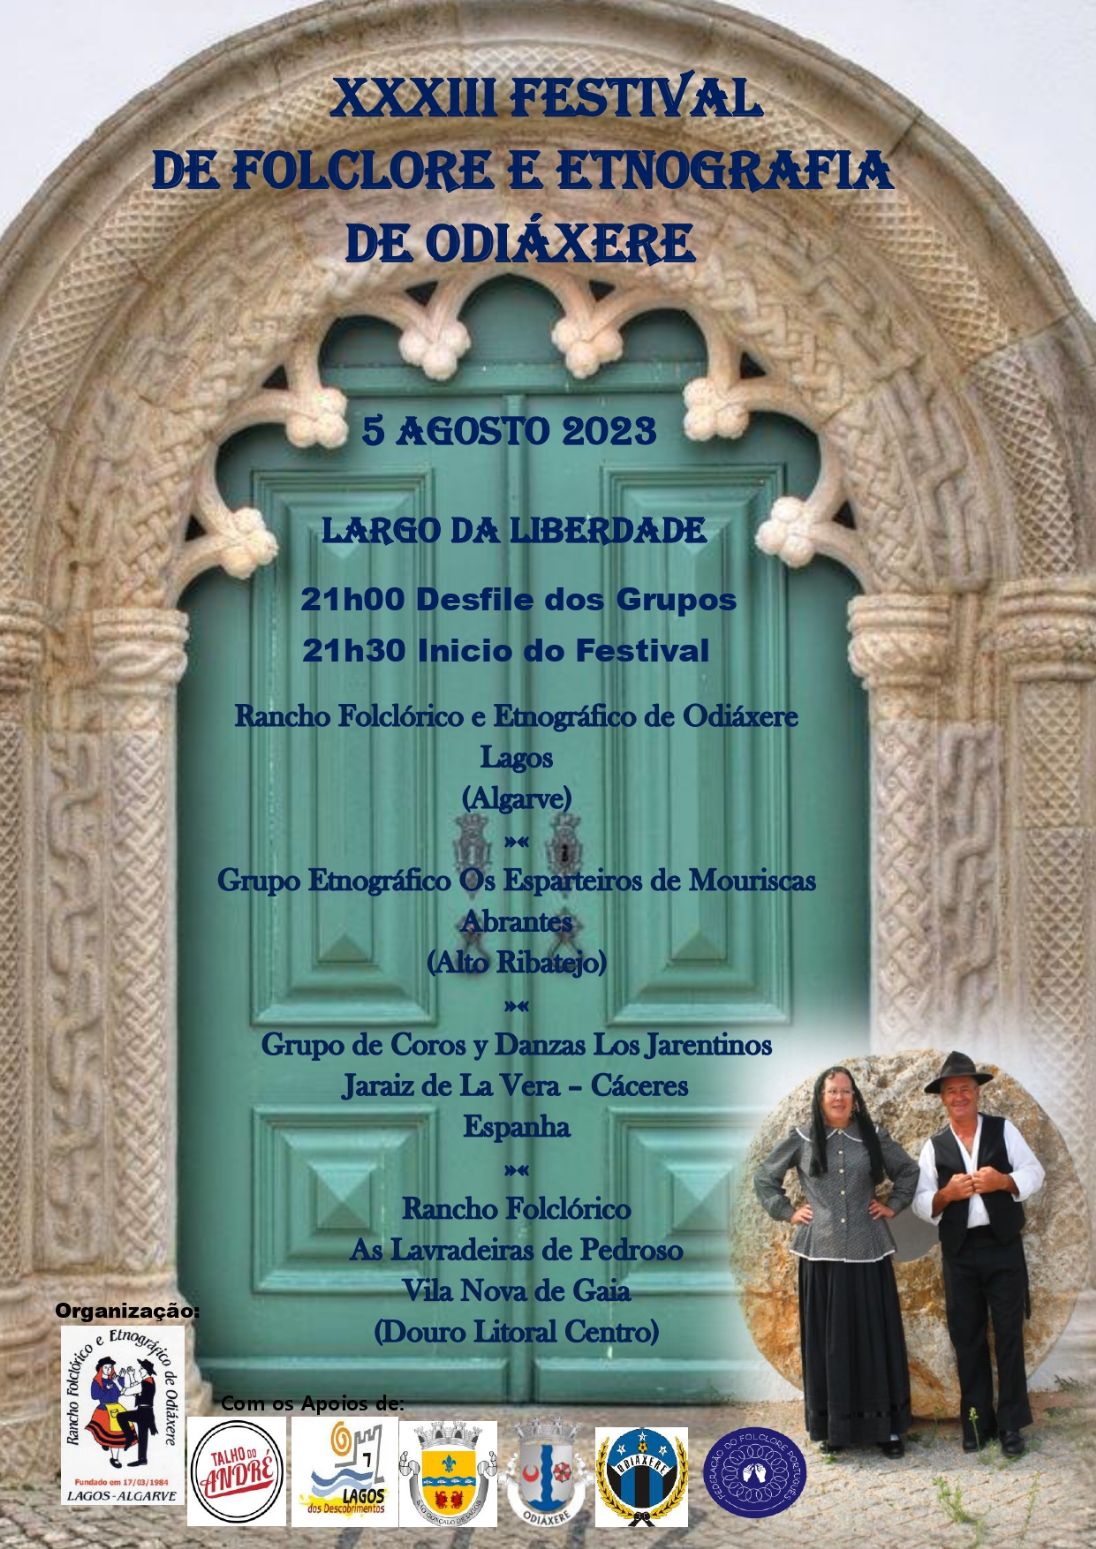 XXXIII Festival de Folclore e Etnografia de Odiáxere está a chegar